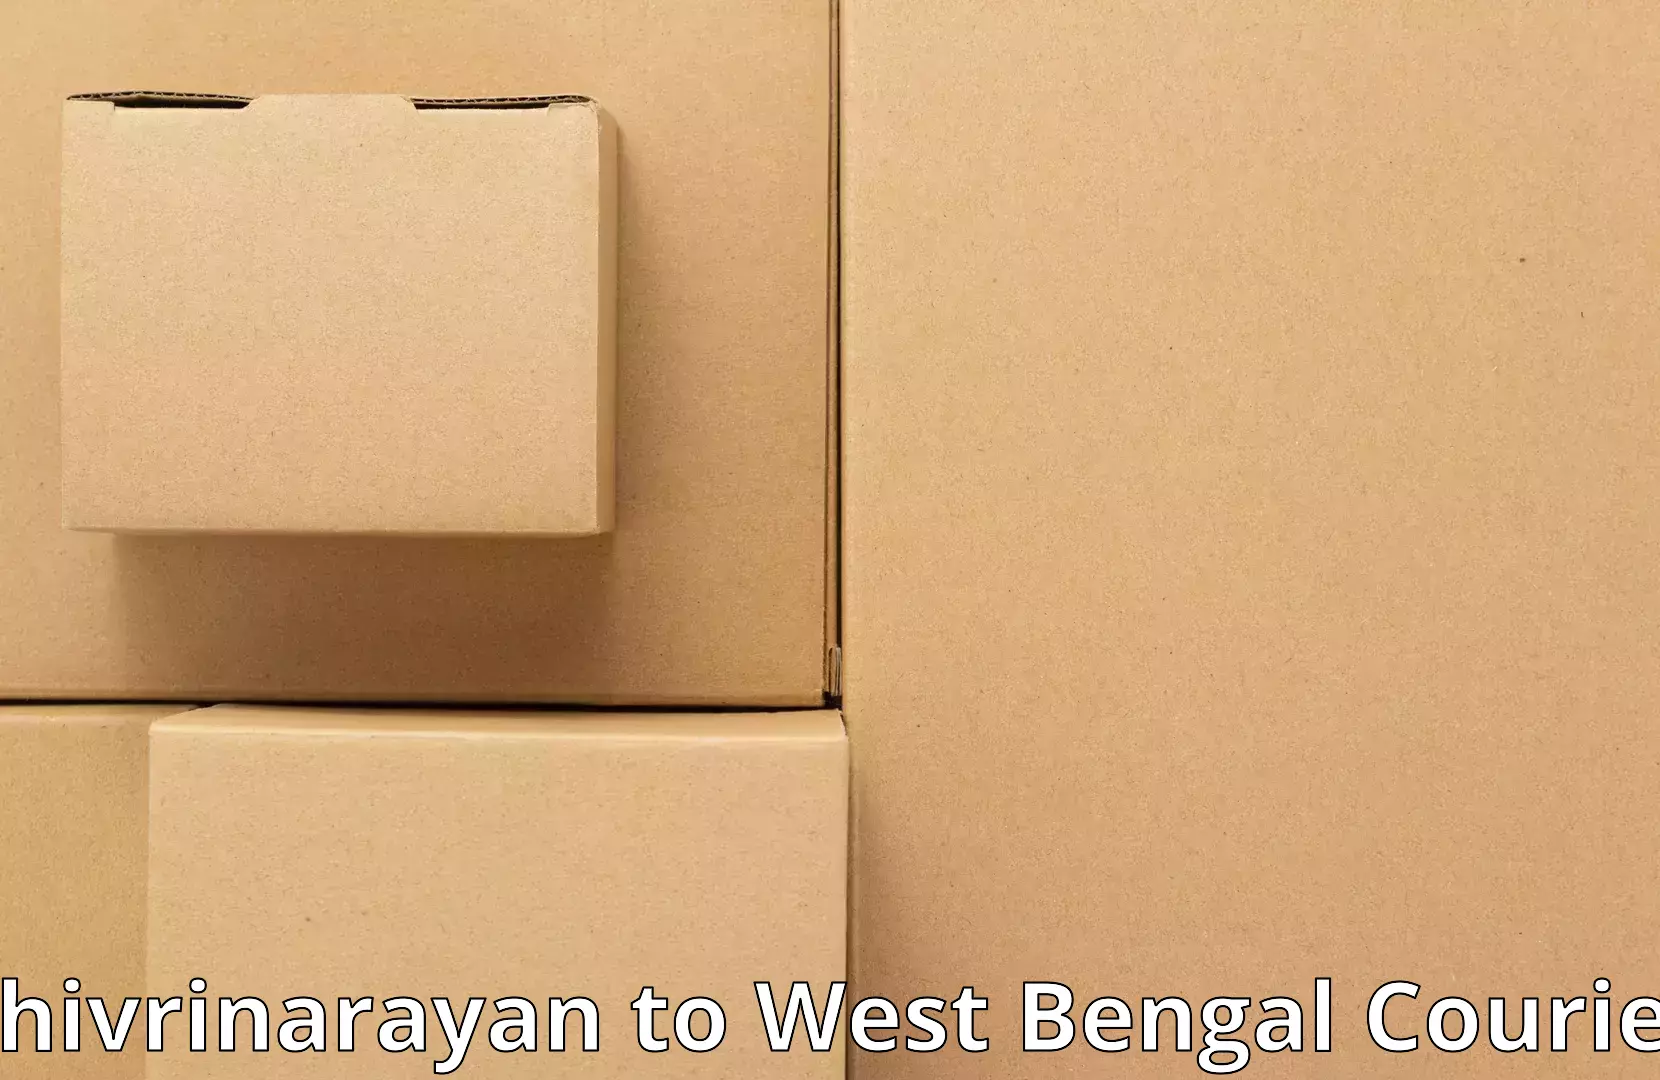 Furniture shipping services Shivrinarayan to Burdwan